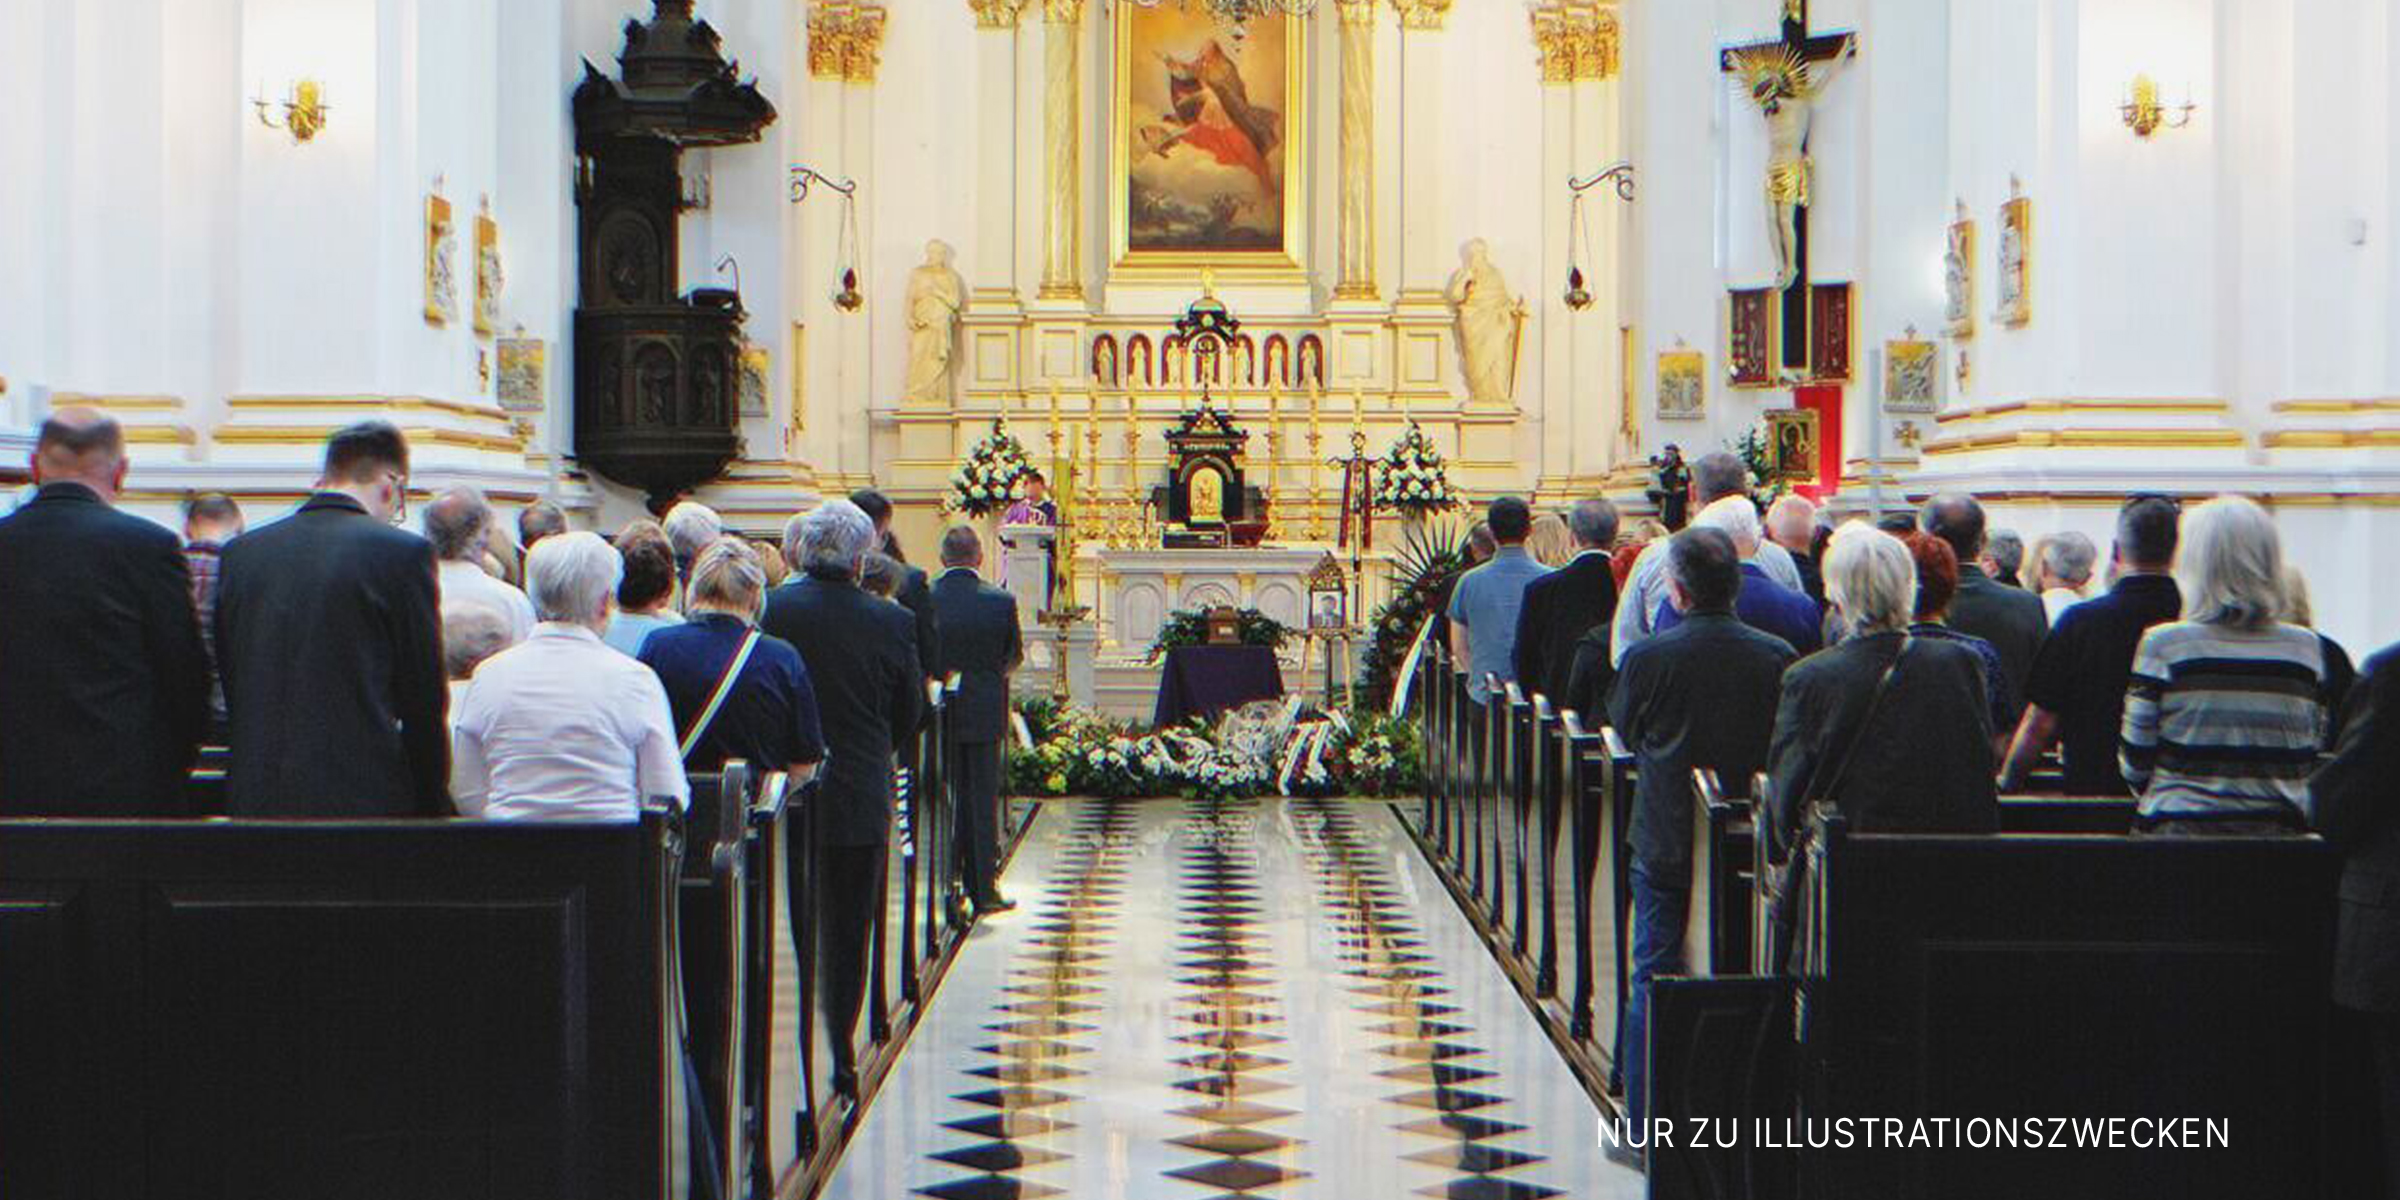 Trauerfeier in einer Kirche | Quelle: Shutterstock